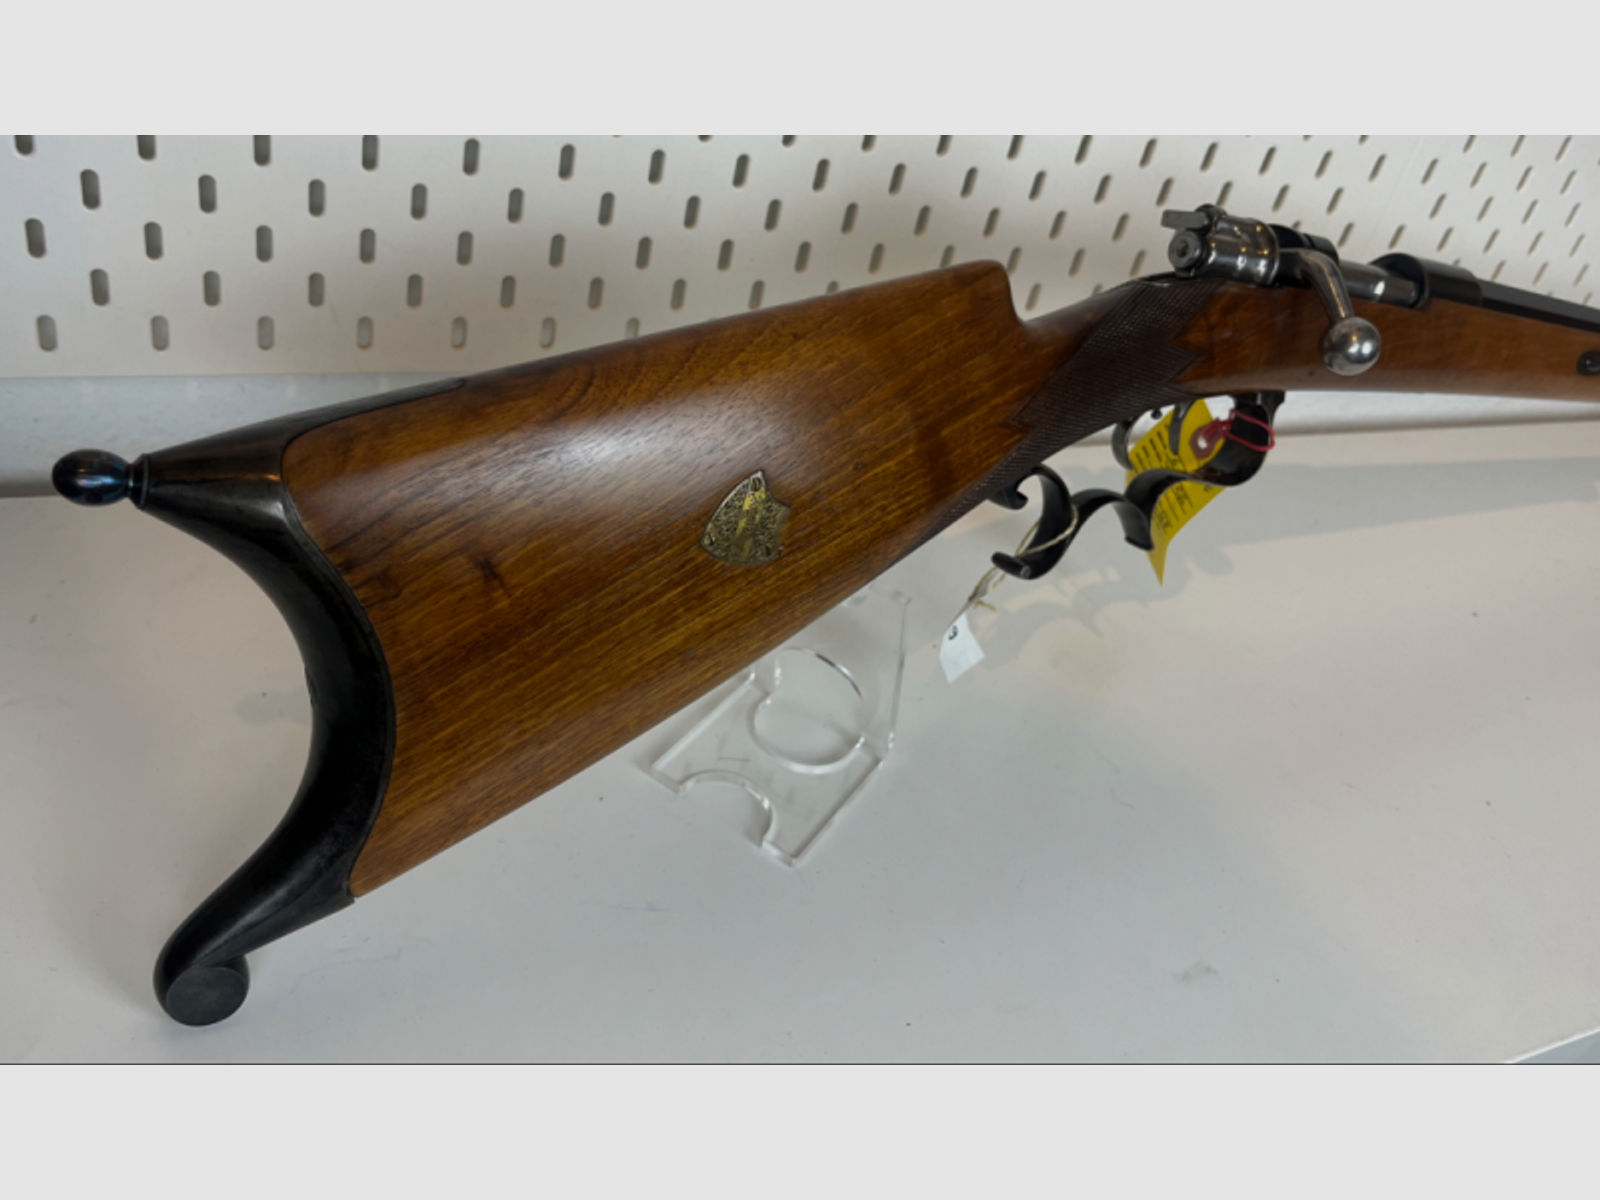 unbekannte Mauser Repetierbüchse Vorkrieg, Target Rifle im Kal. 8,15x46 R, A. Mauser Seriennummer 6